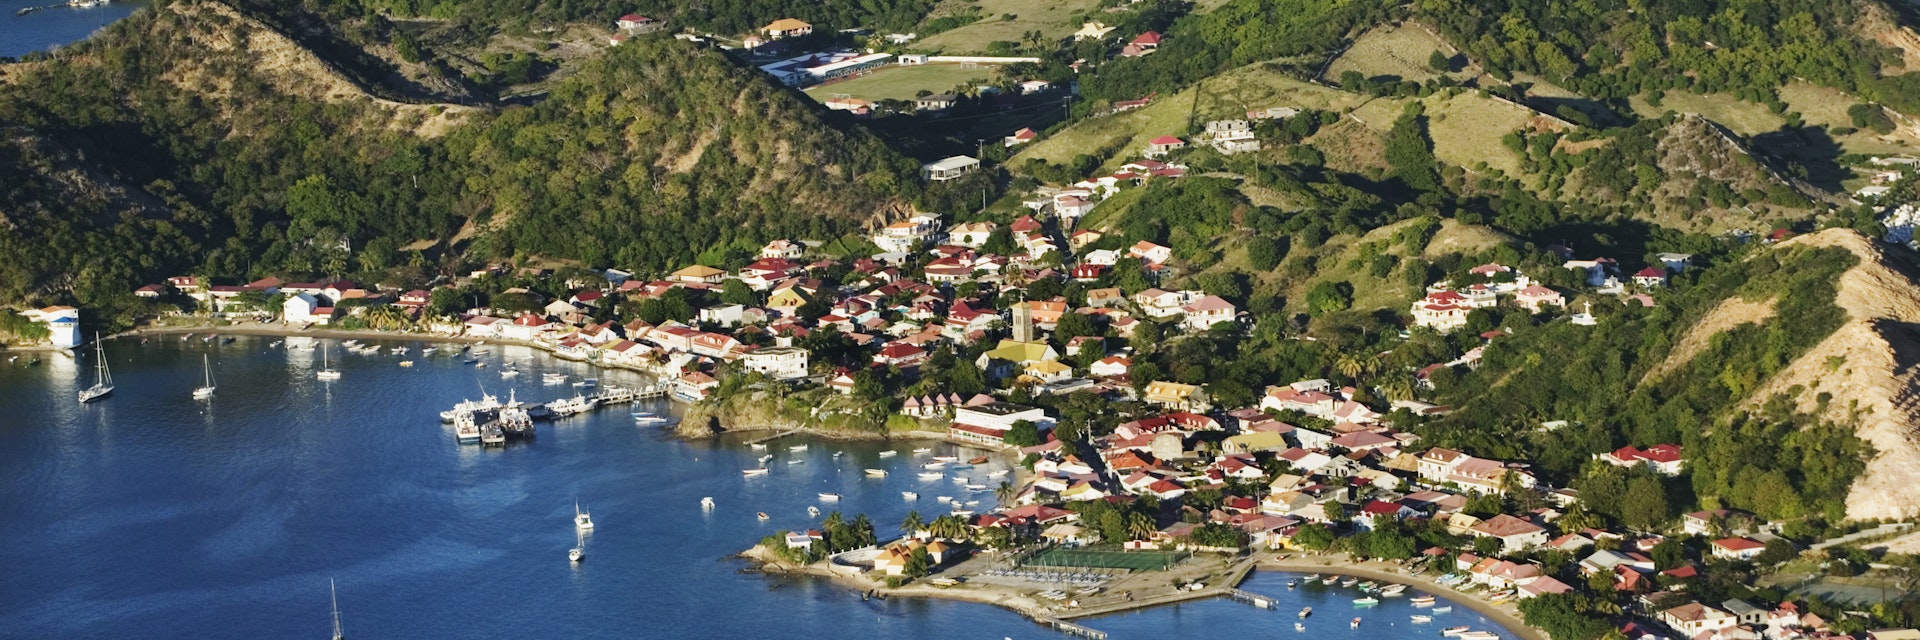 Caribbean, Guadeloupe, lles des Saintes, Terre de Haut, aerial view